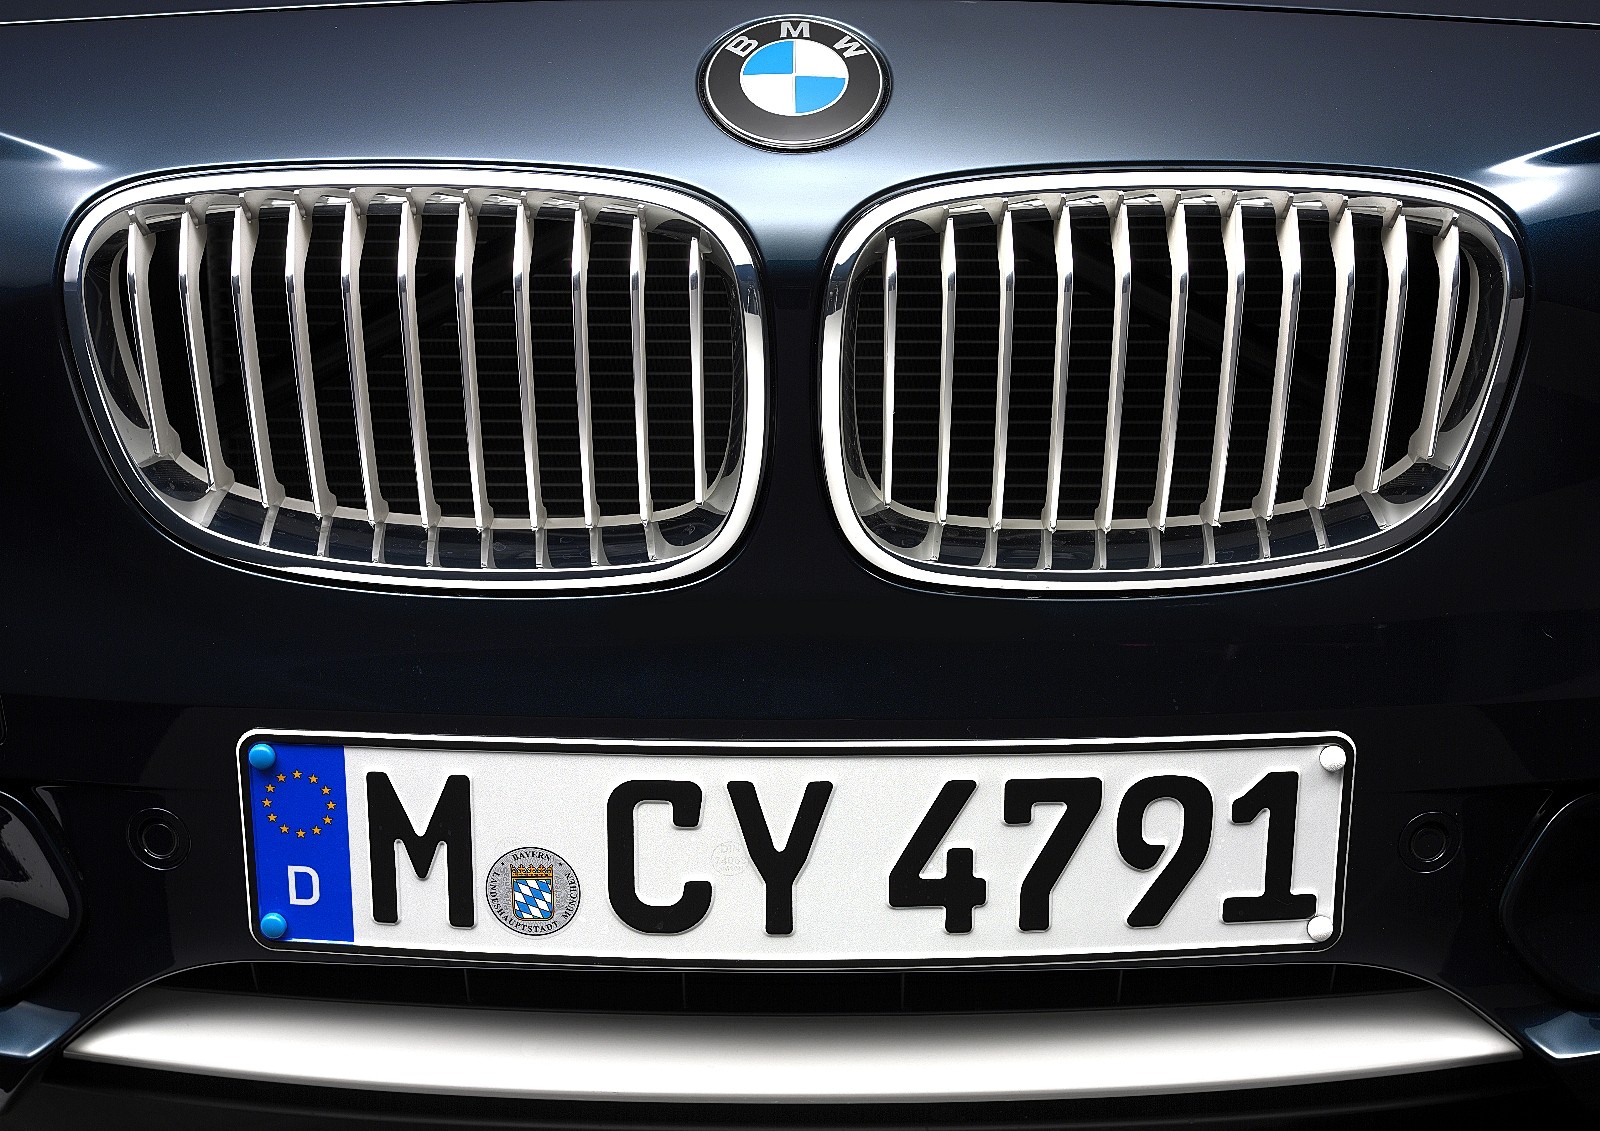 BMW_1er_2012_103